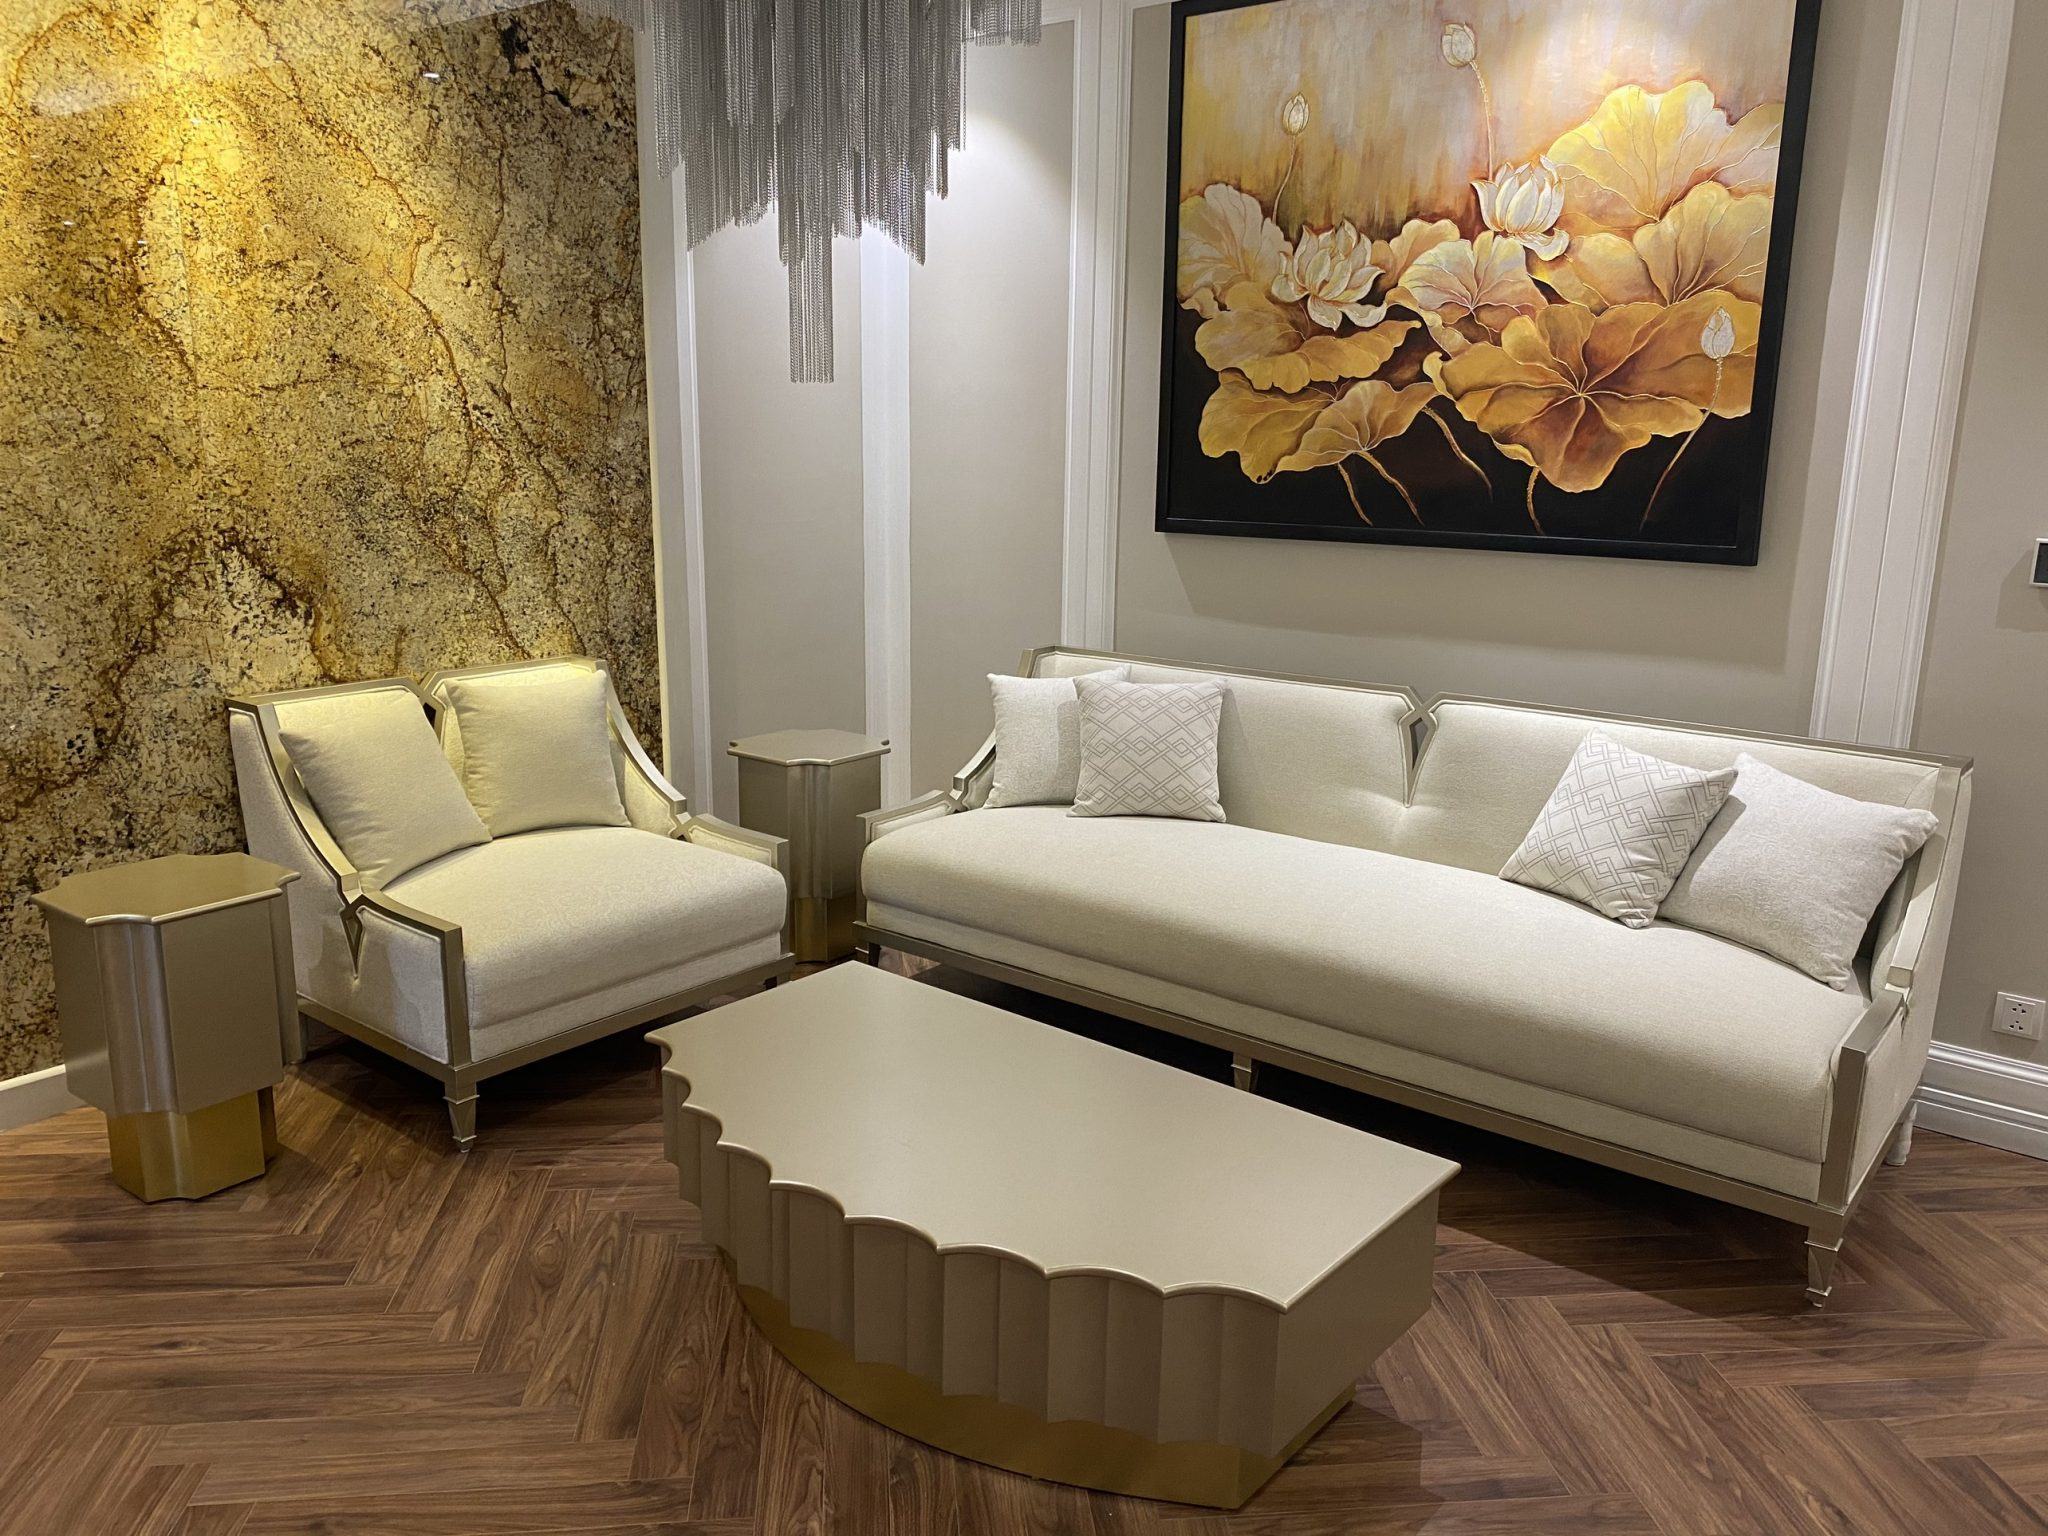 Với thiết kế độc đáo, tinh tế và đầy nghệ thuật, sofa Art Deco sẽ chắc chắn khiến cho căn phòng của bạn trở nên sang trọng và đẳng cấp hơn. Hãy xem ngay hình ảnh liên quan đến sofa Art Deco để cảm nhận sự độc đáo của nó.